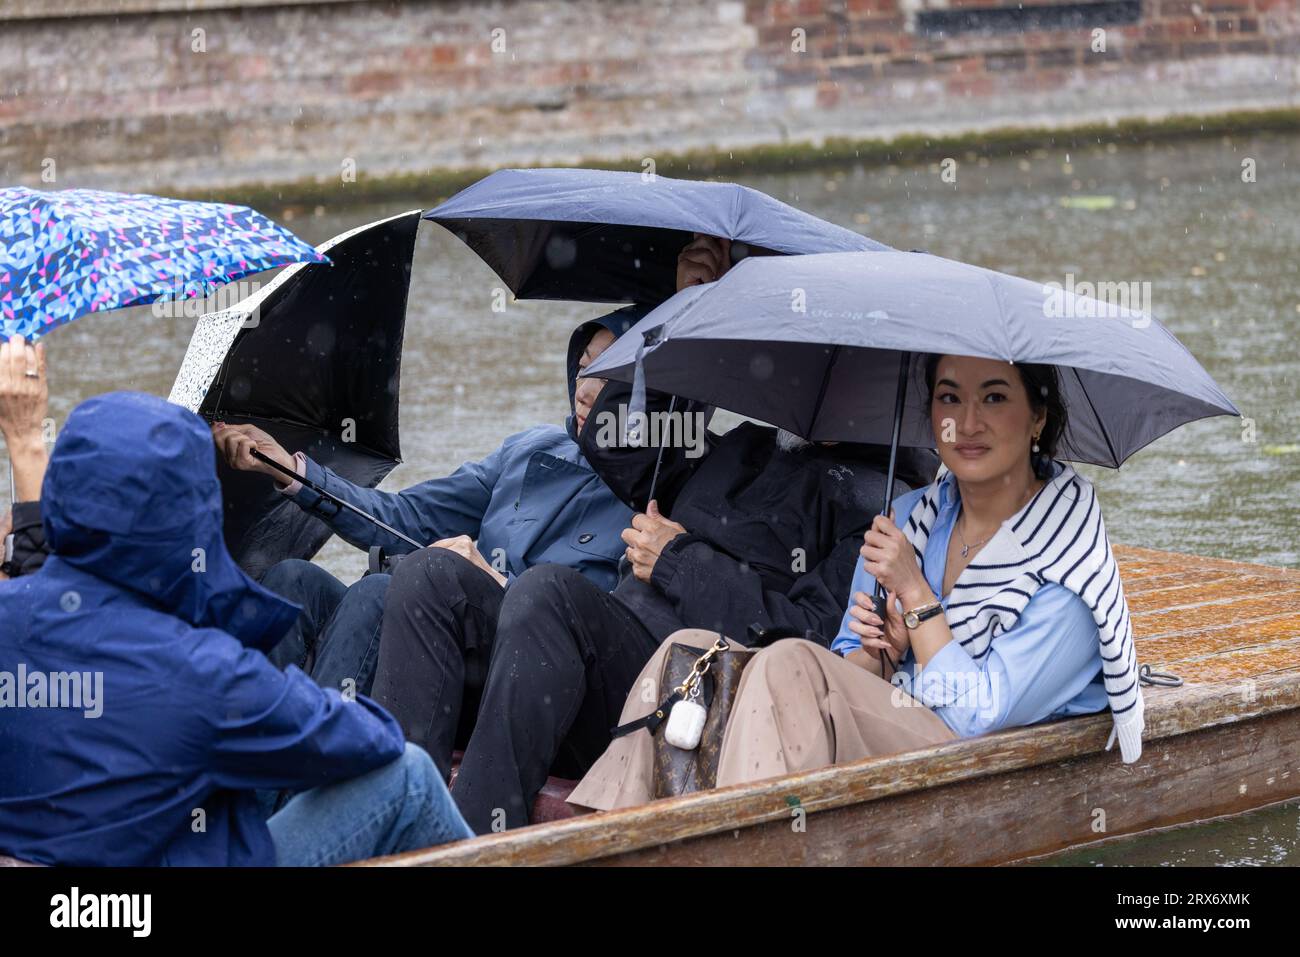 La foto datata 20 settembre mostra le persone con vento forte e pioggia a Cambridge mentre vanno a fare un punt sul fiume Cam il mercoledì pomeriggio. Foto Stock